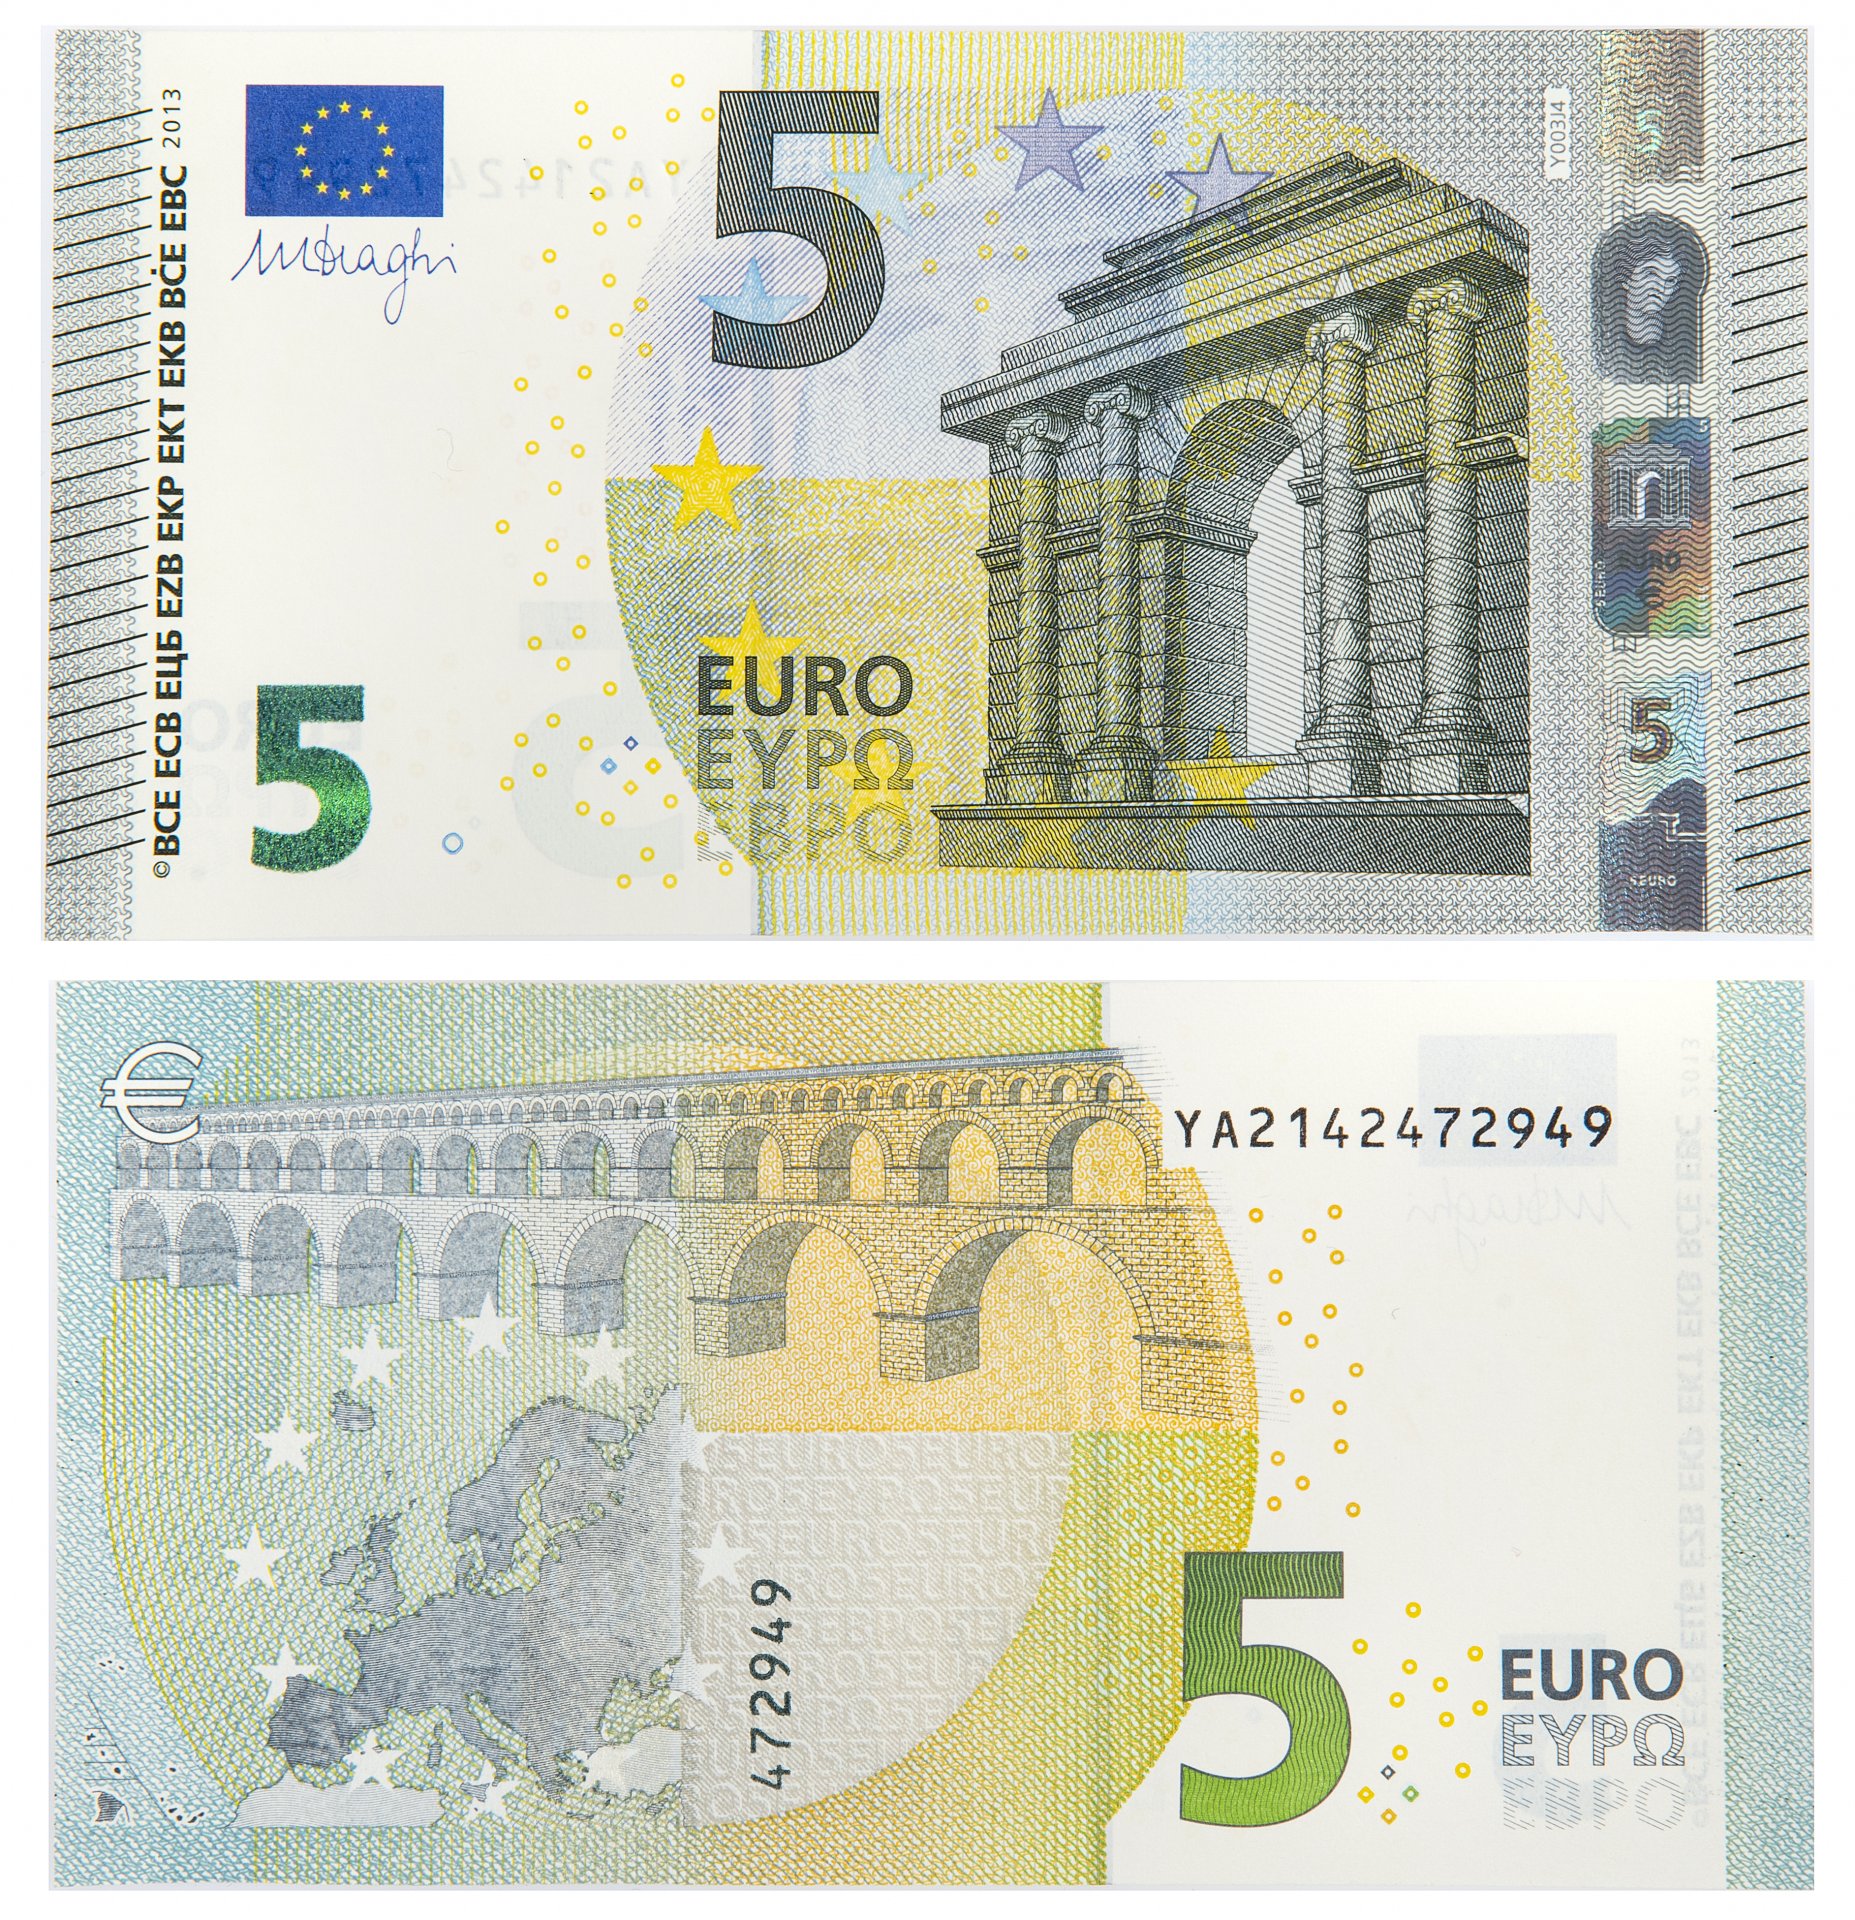 Купюра 5 евро. 5 Евро купюра. 5 Евро банкноты евро. Банкноты евро номинал 2002 года. Евро банкноты номинал 200.